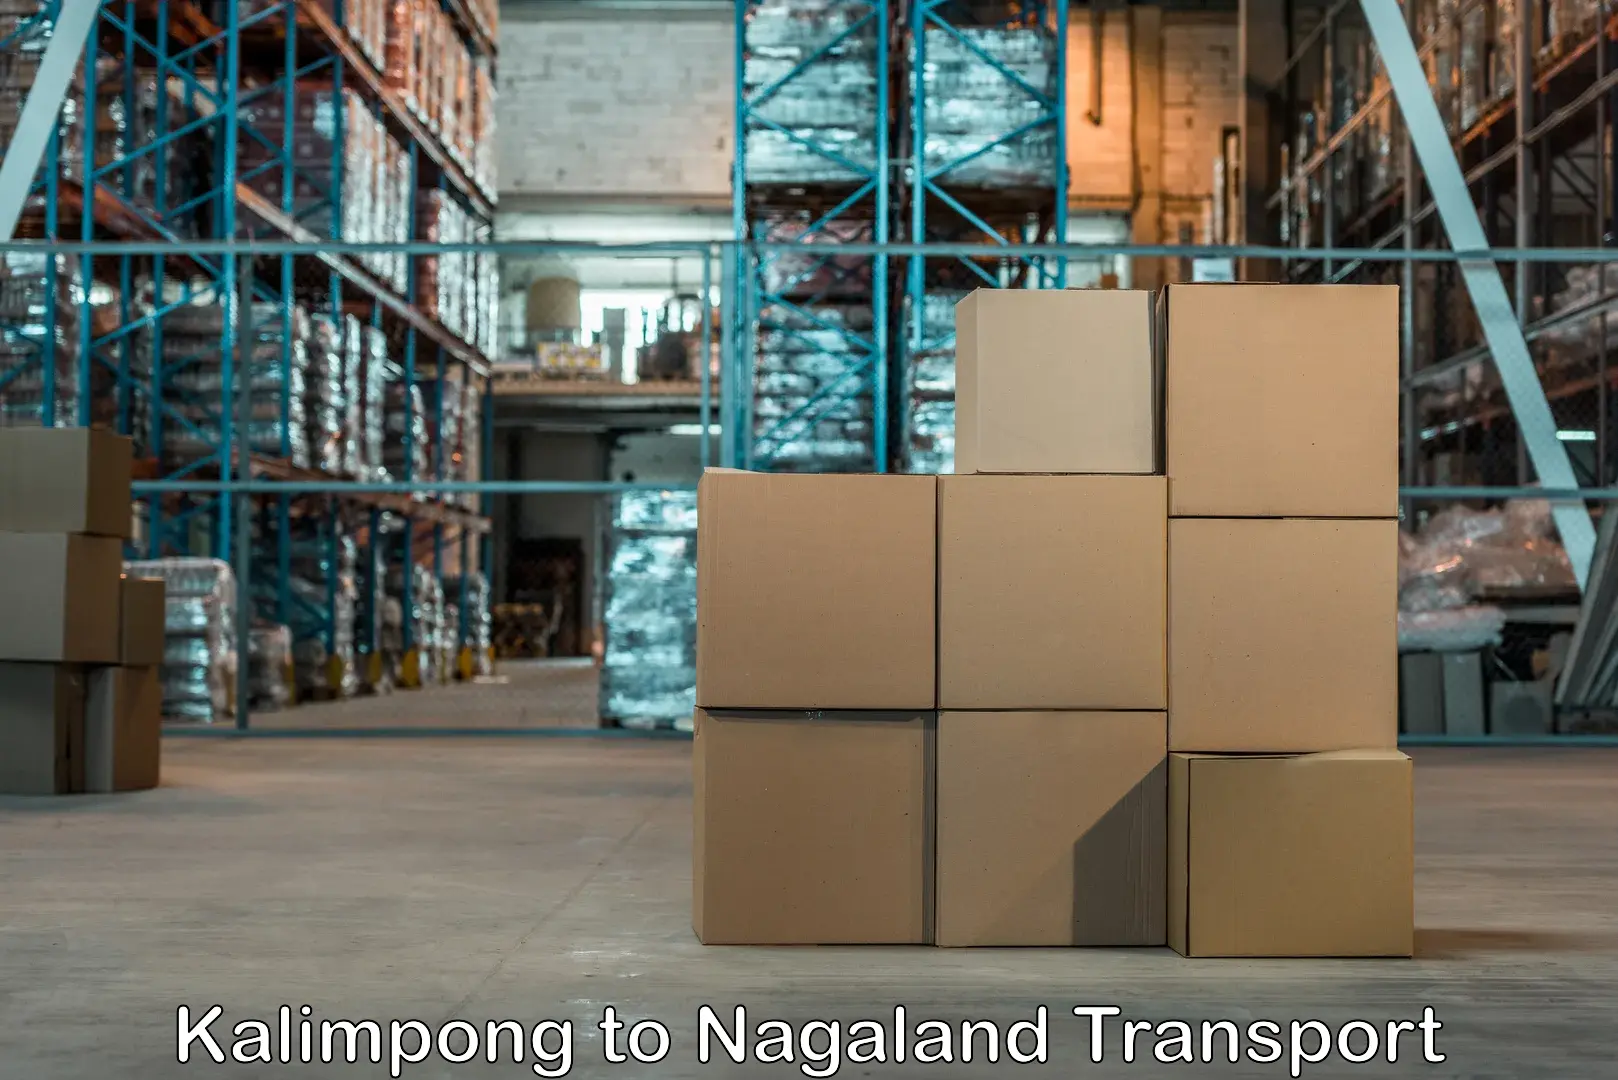 Online transport service Kalimpong to Nagaland